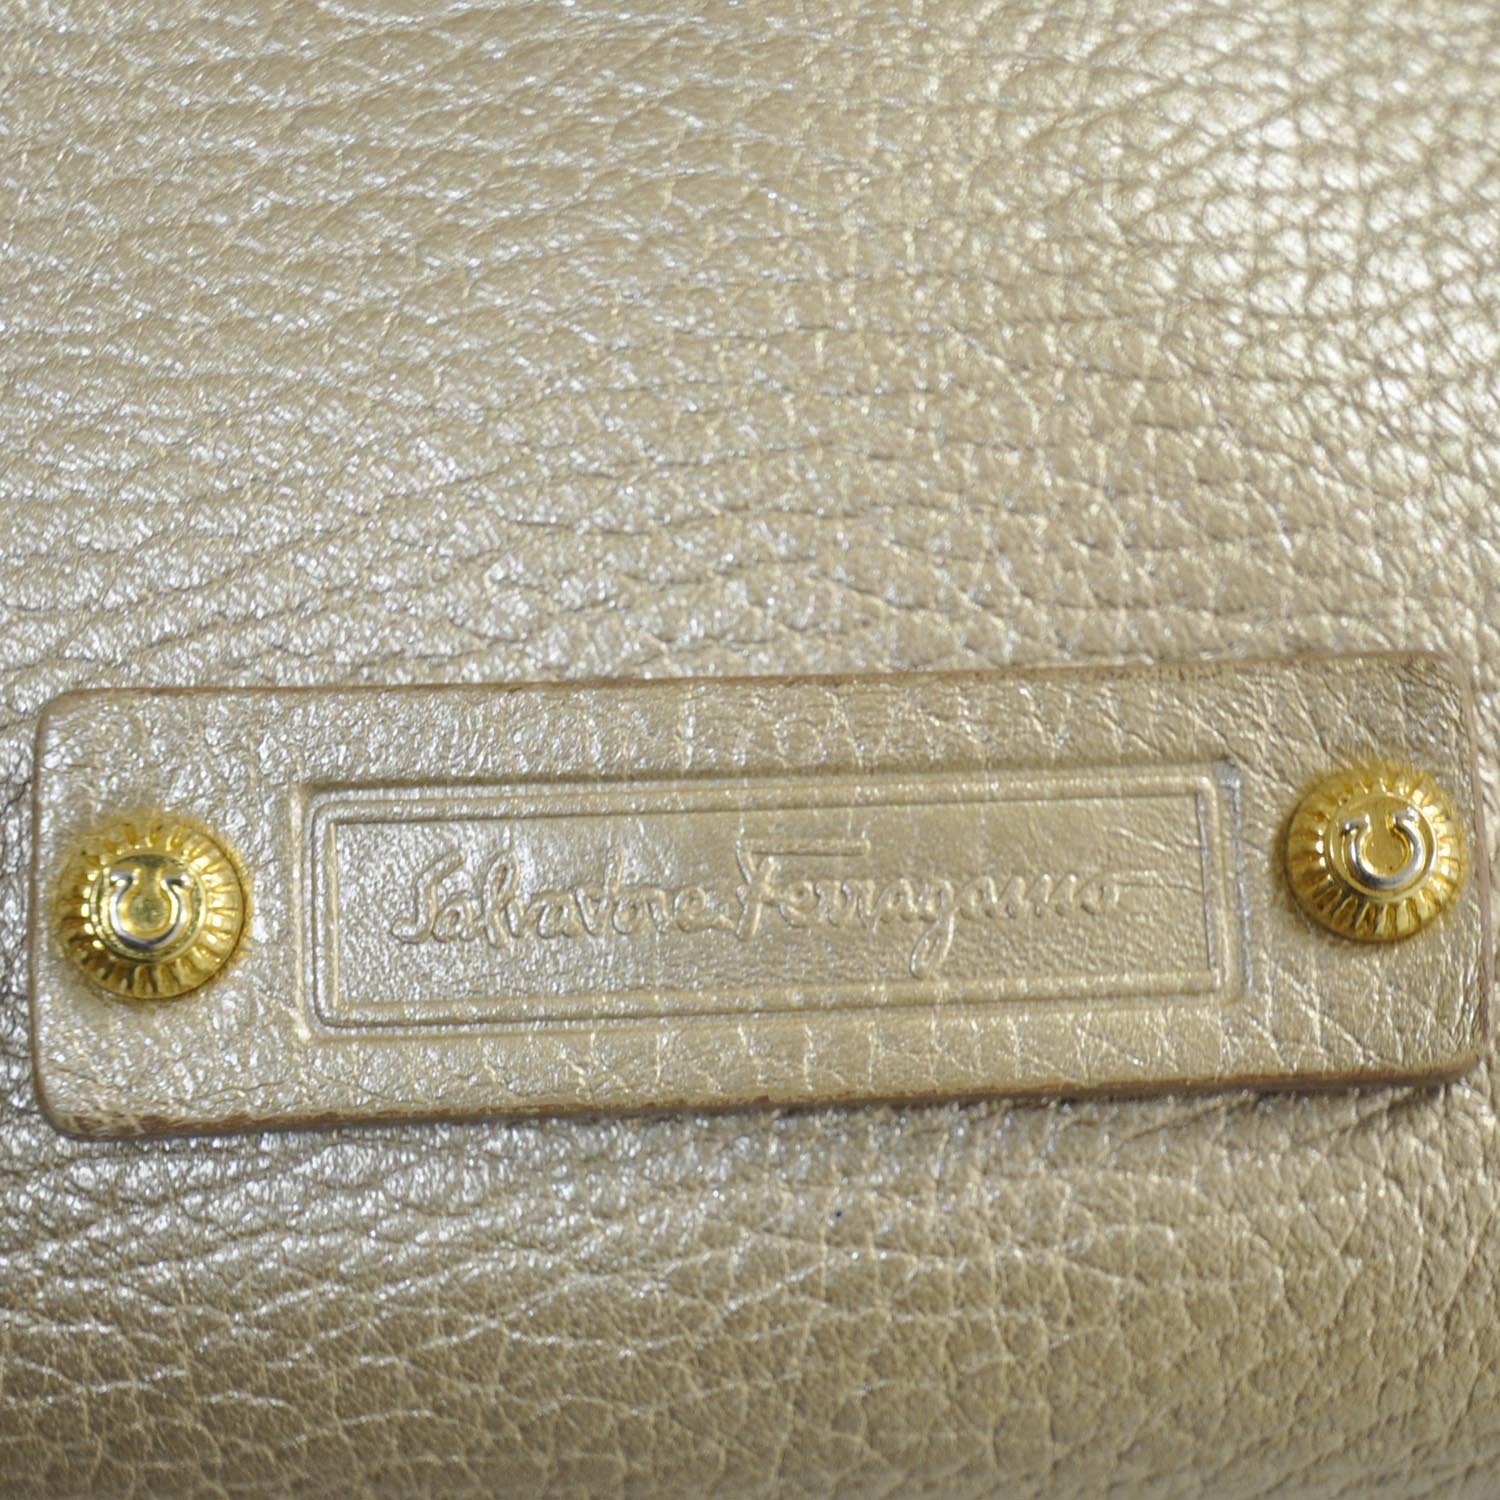 SALVATORE FERRAGAMO Leather Shopper Tote Gold 23938